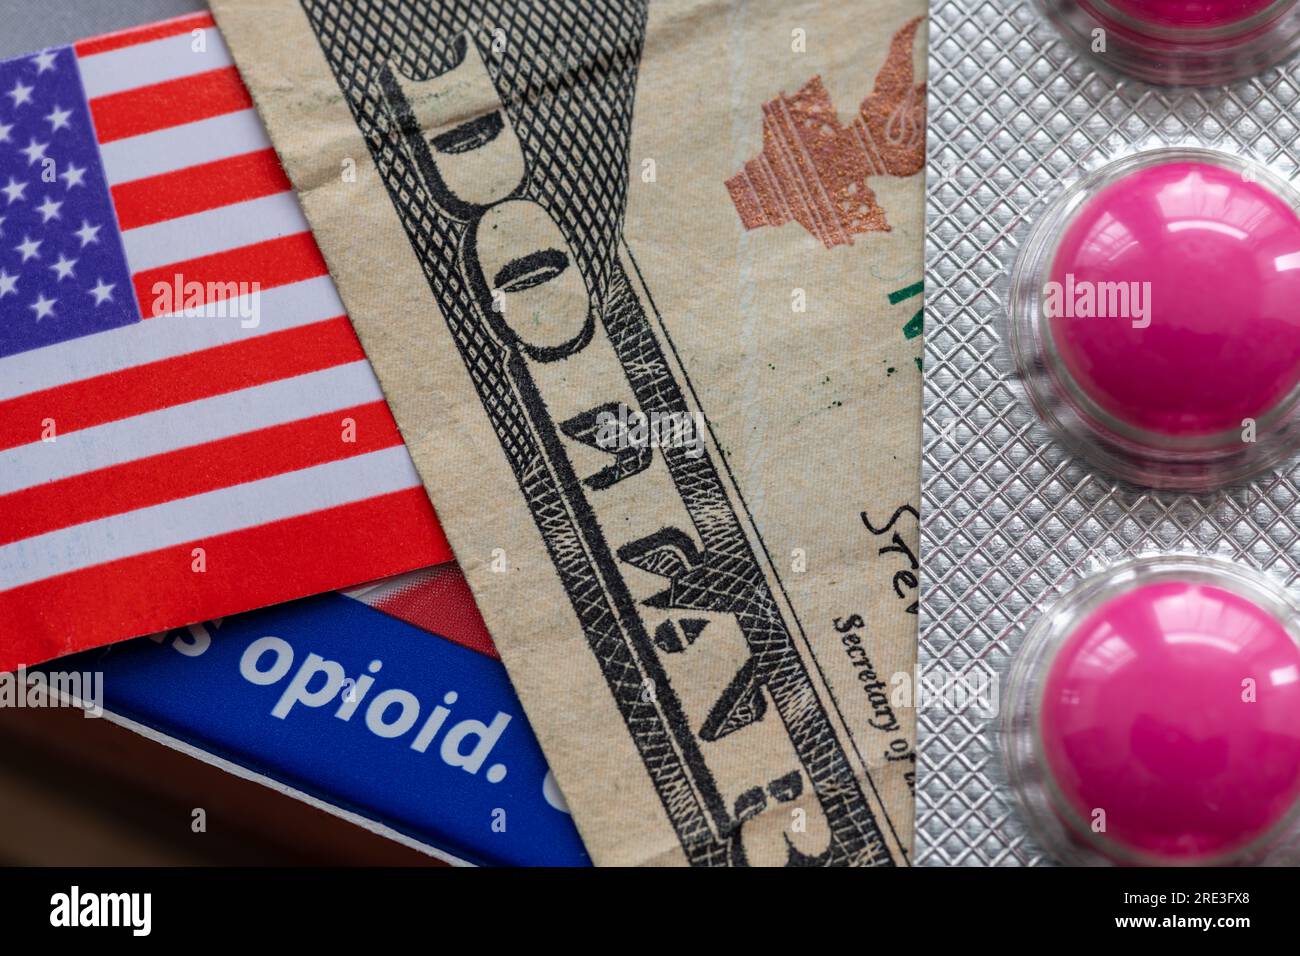 Un concepto de adicción a las drogas opioides con un billete de dólar, bandera estadounidense y la palabra opioide en una caja de medicina. Foto de stock